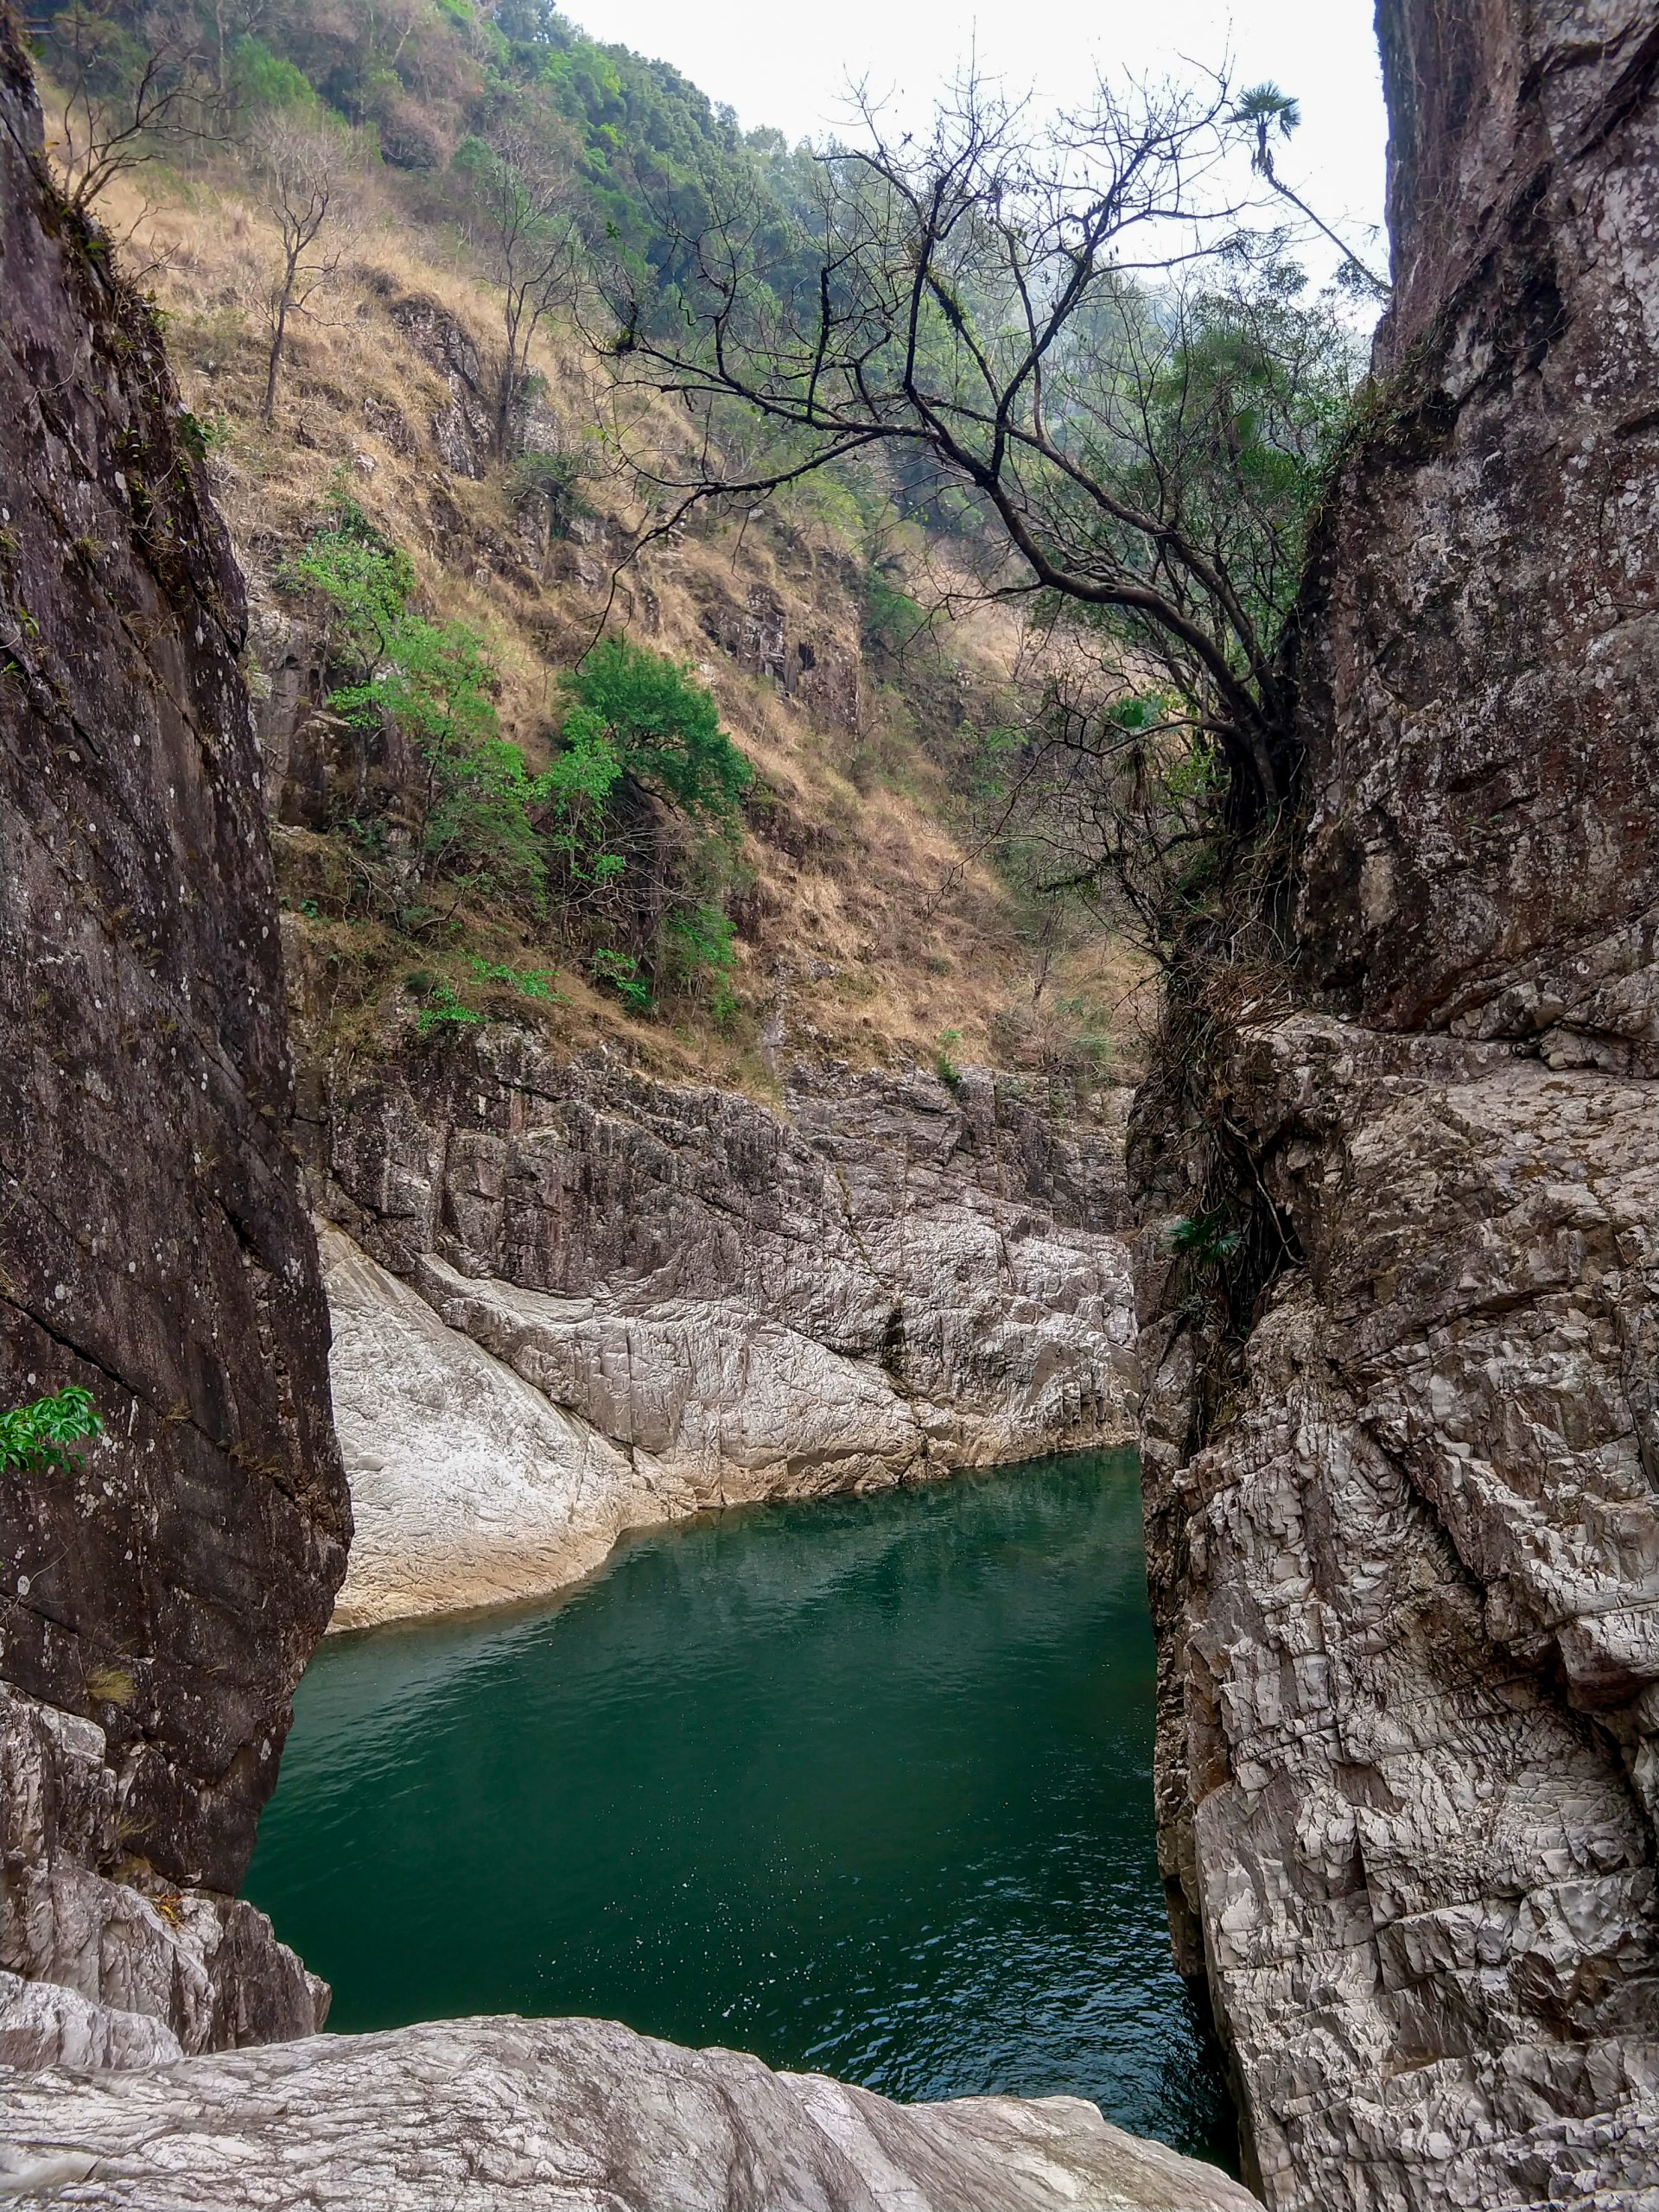 A water resource under rocky hills